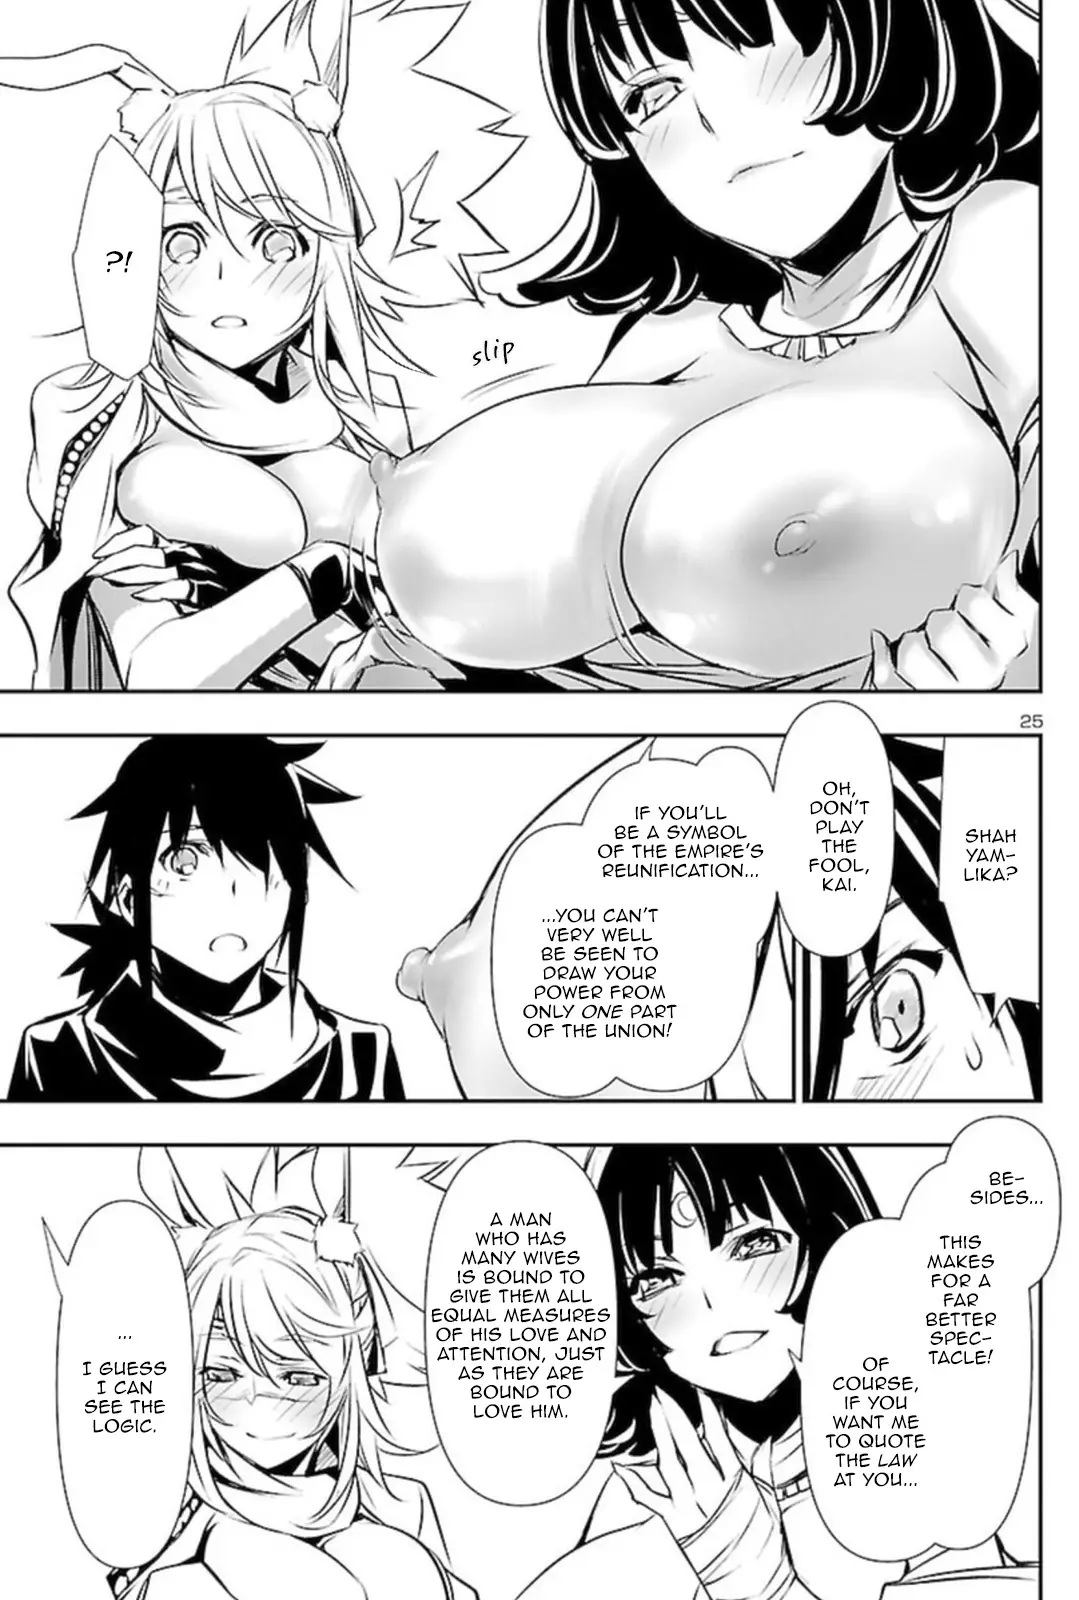 Shinju no Nectar - 68 page 25-29d7e049